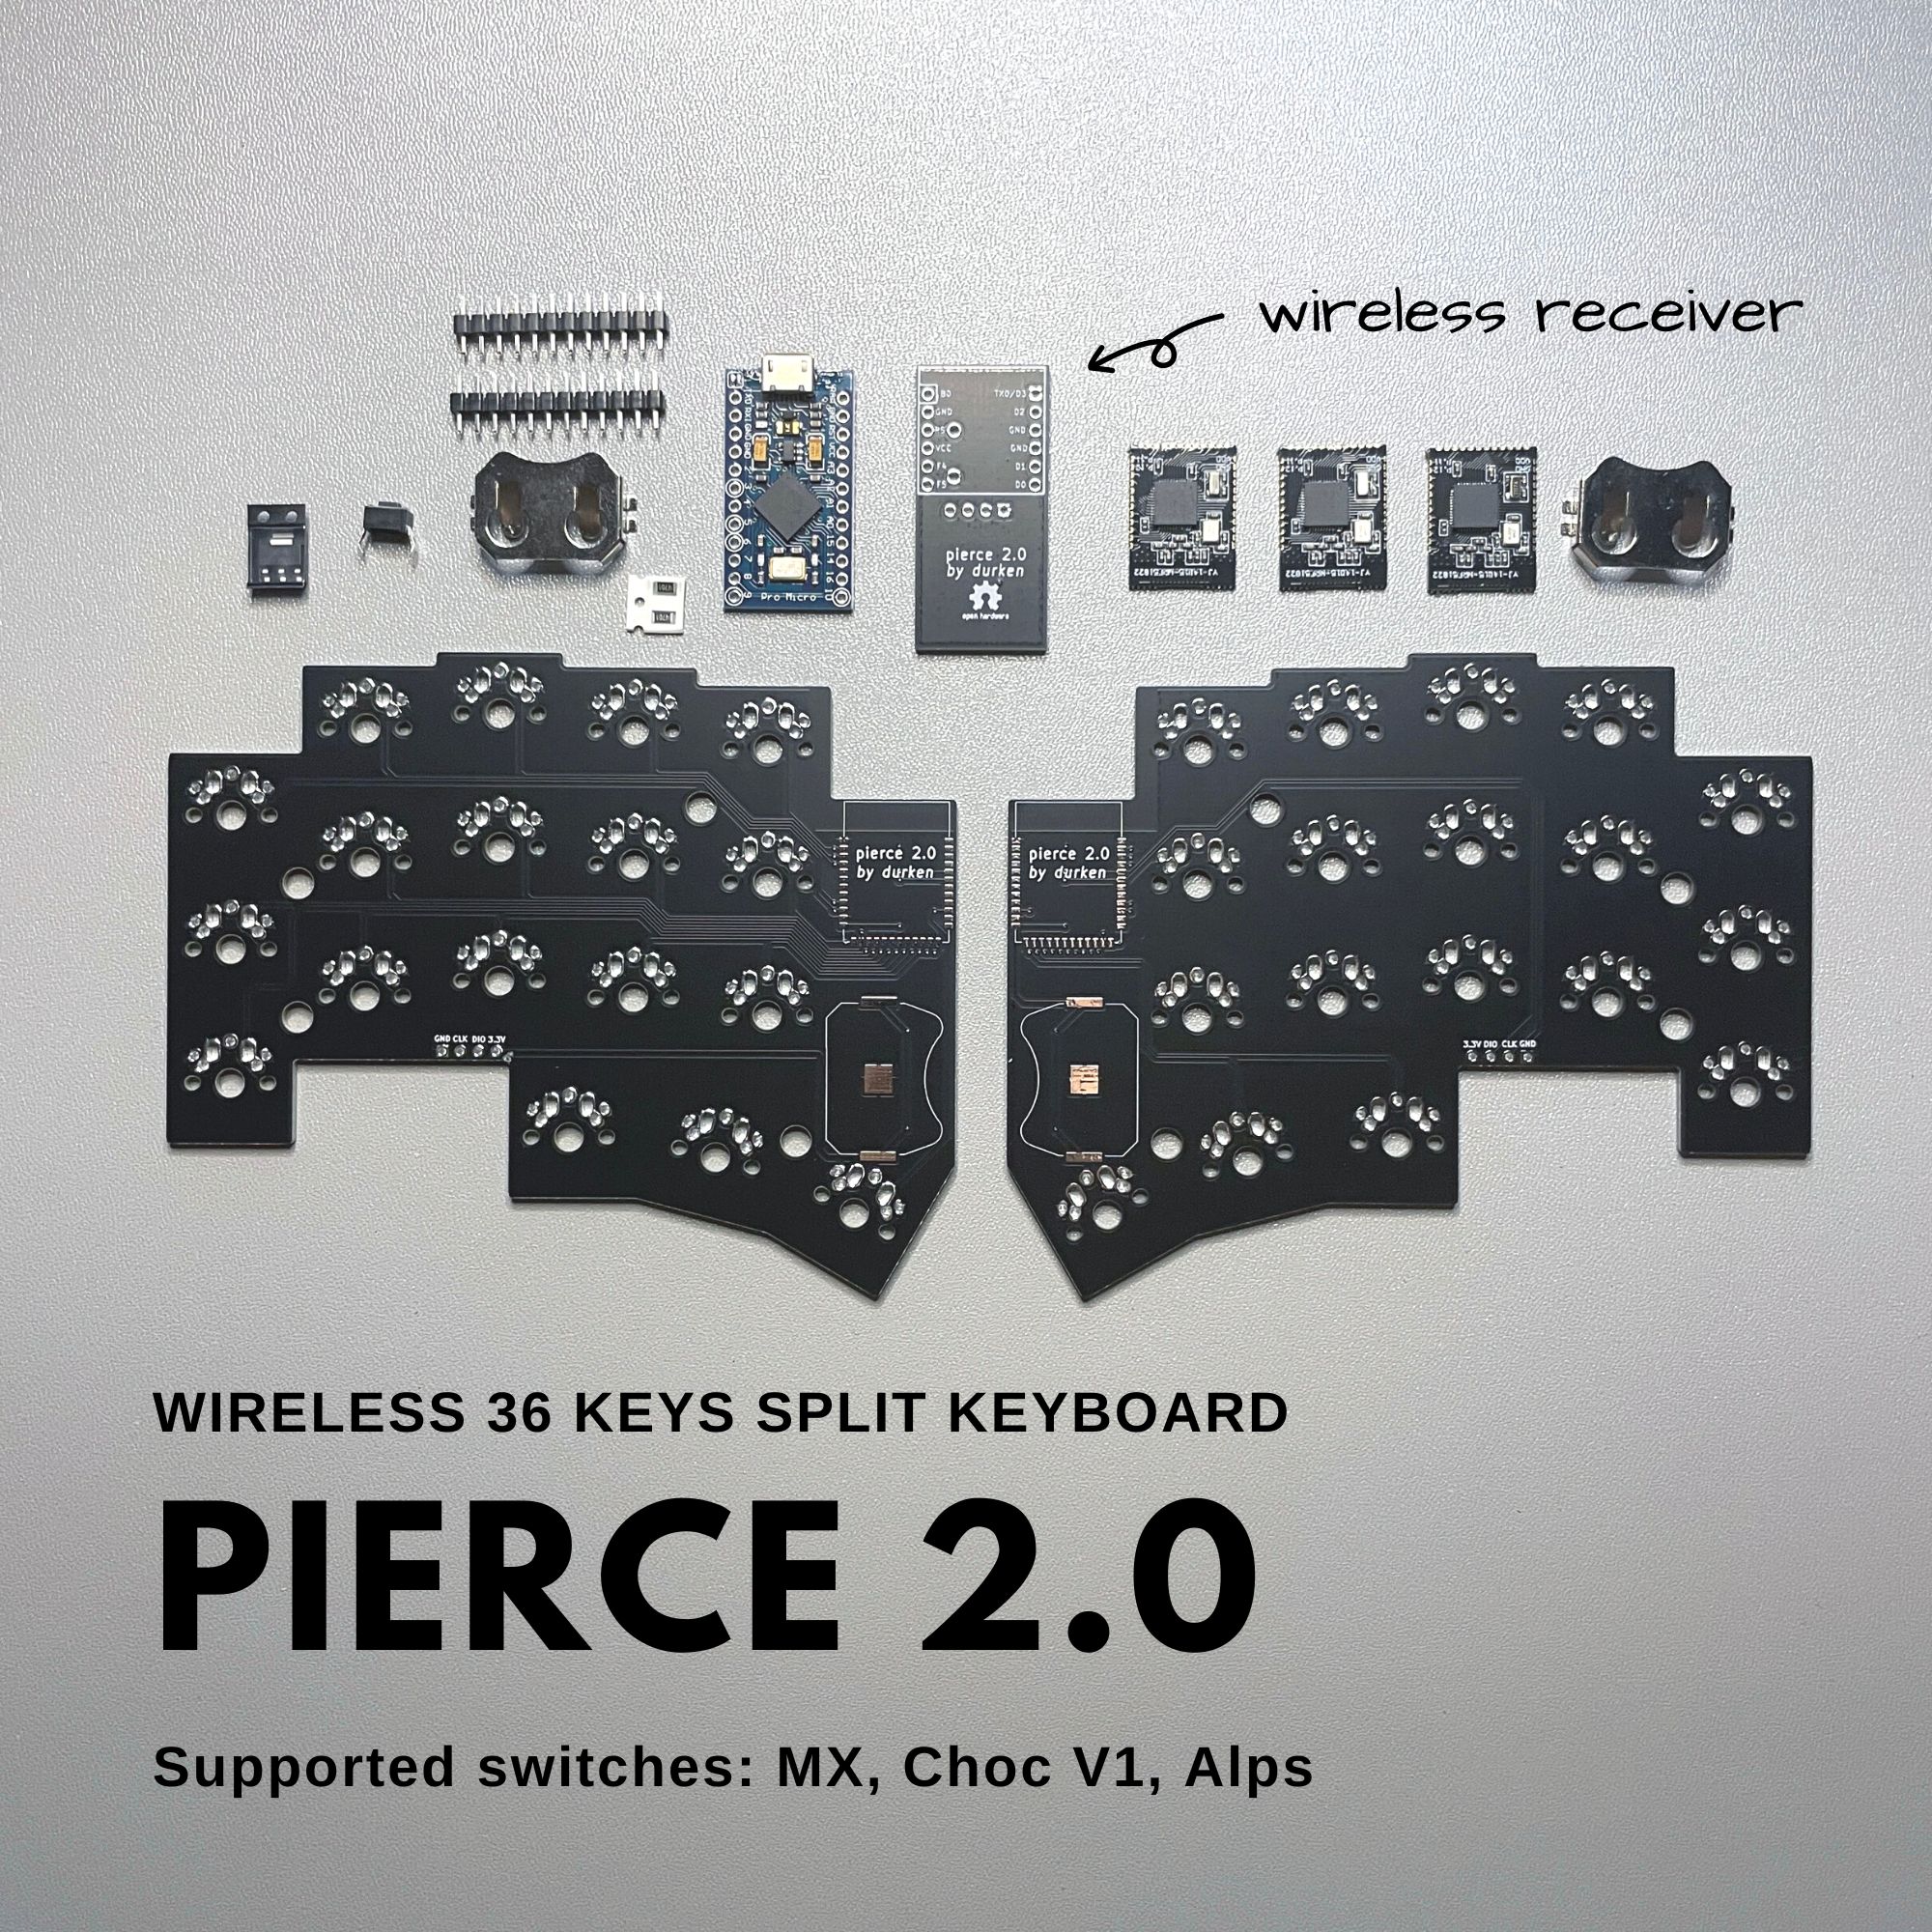 pierce 2.0 Wirless DIY keyboard kit